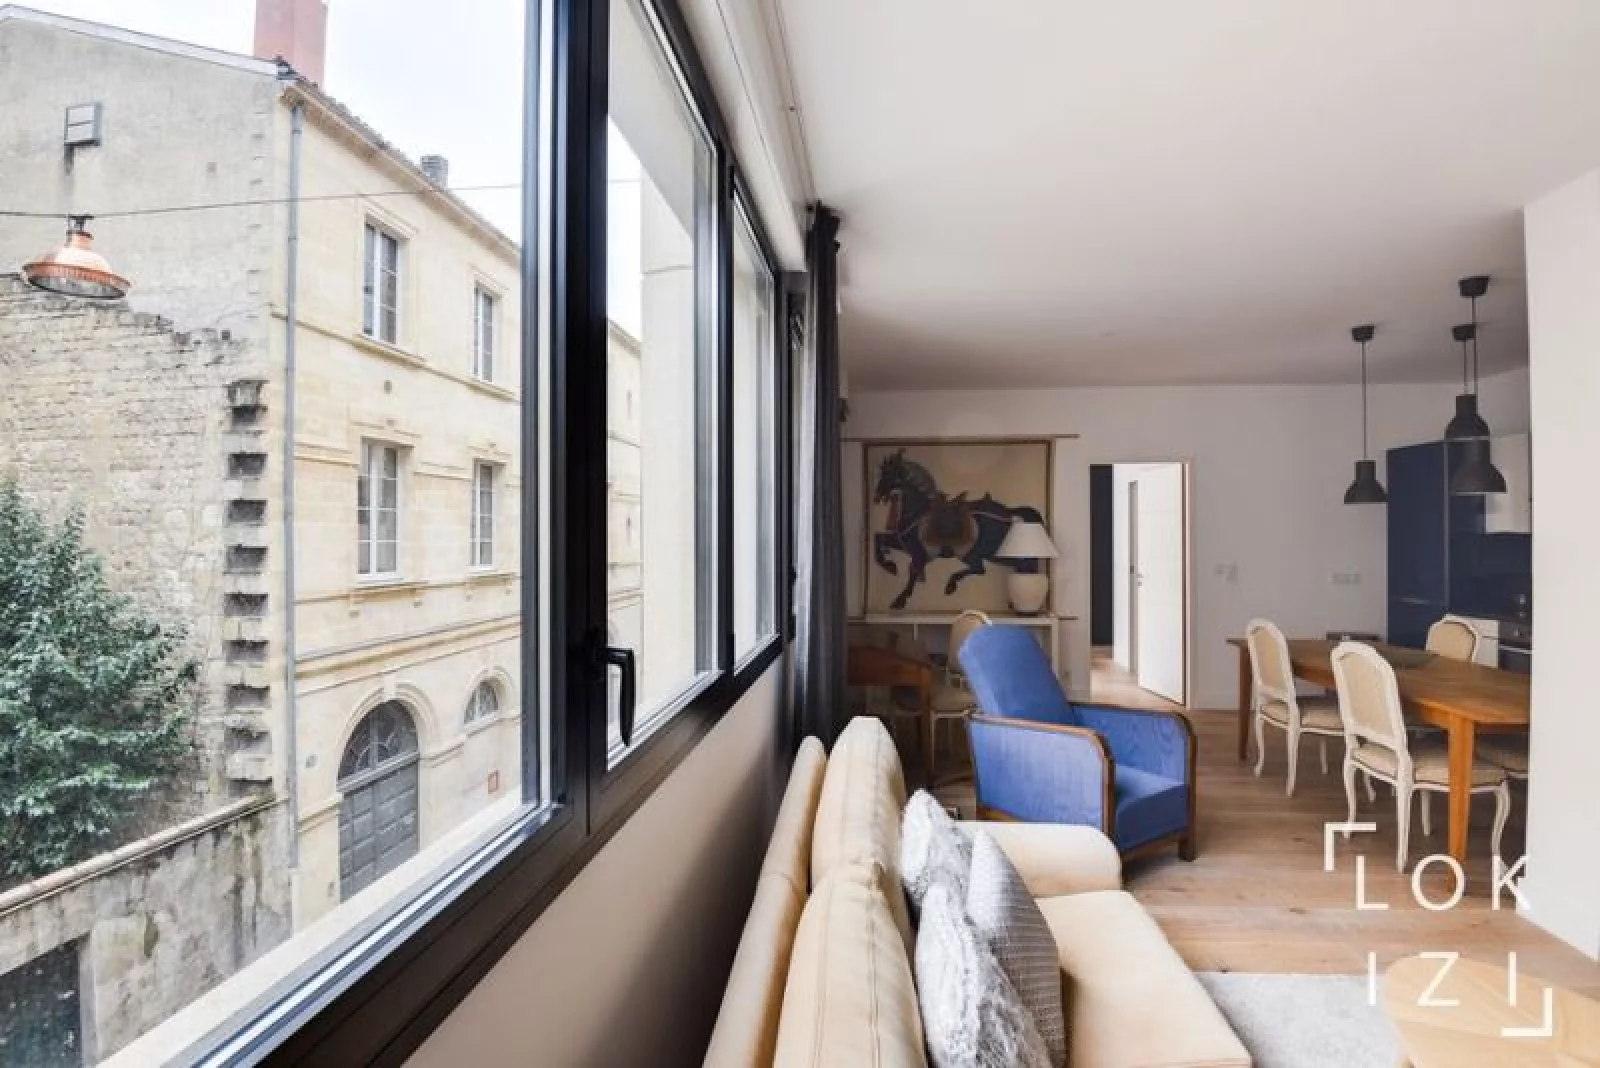 Location appartement meublé 3 pièces 70m²  (Bordeaux centre - Pey Berland)